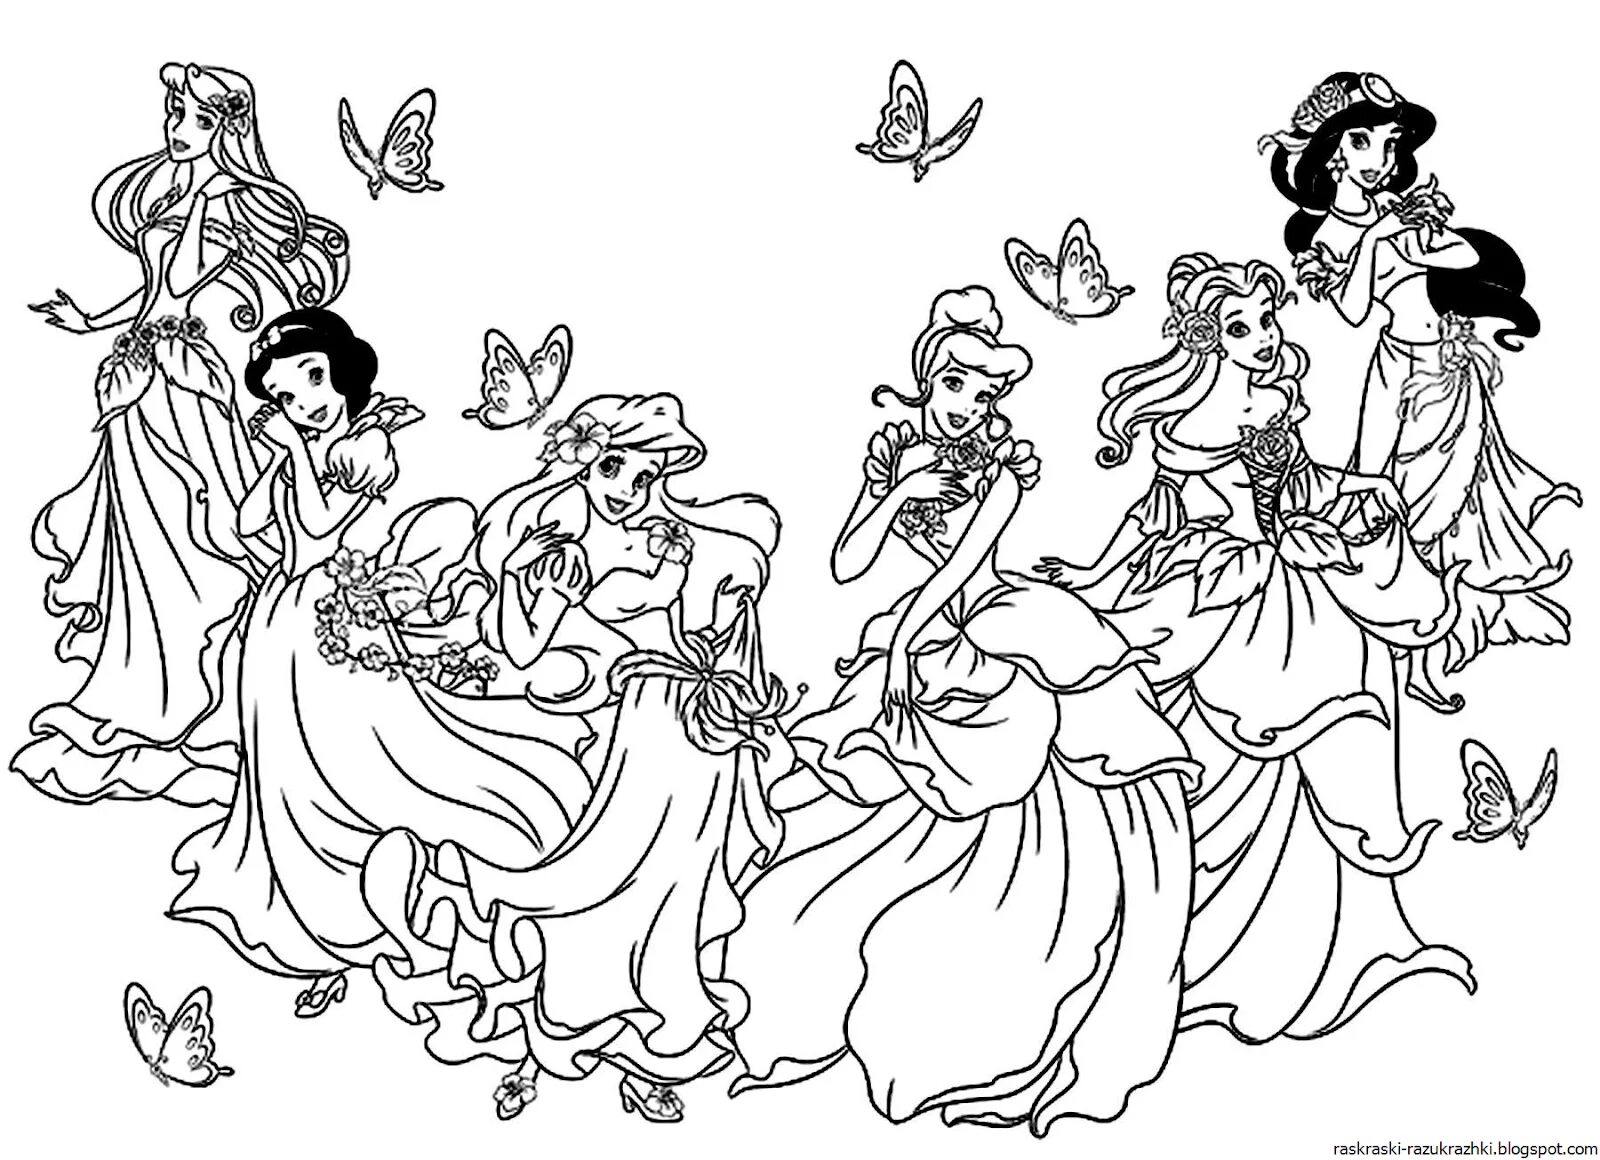 All disney princesses #10